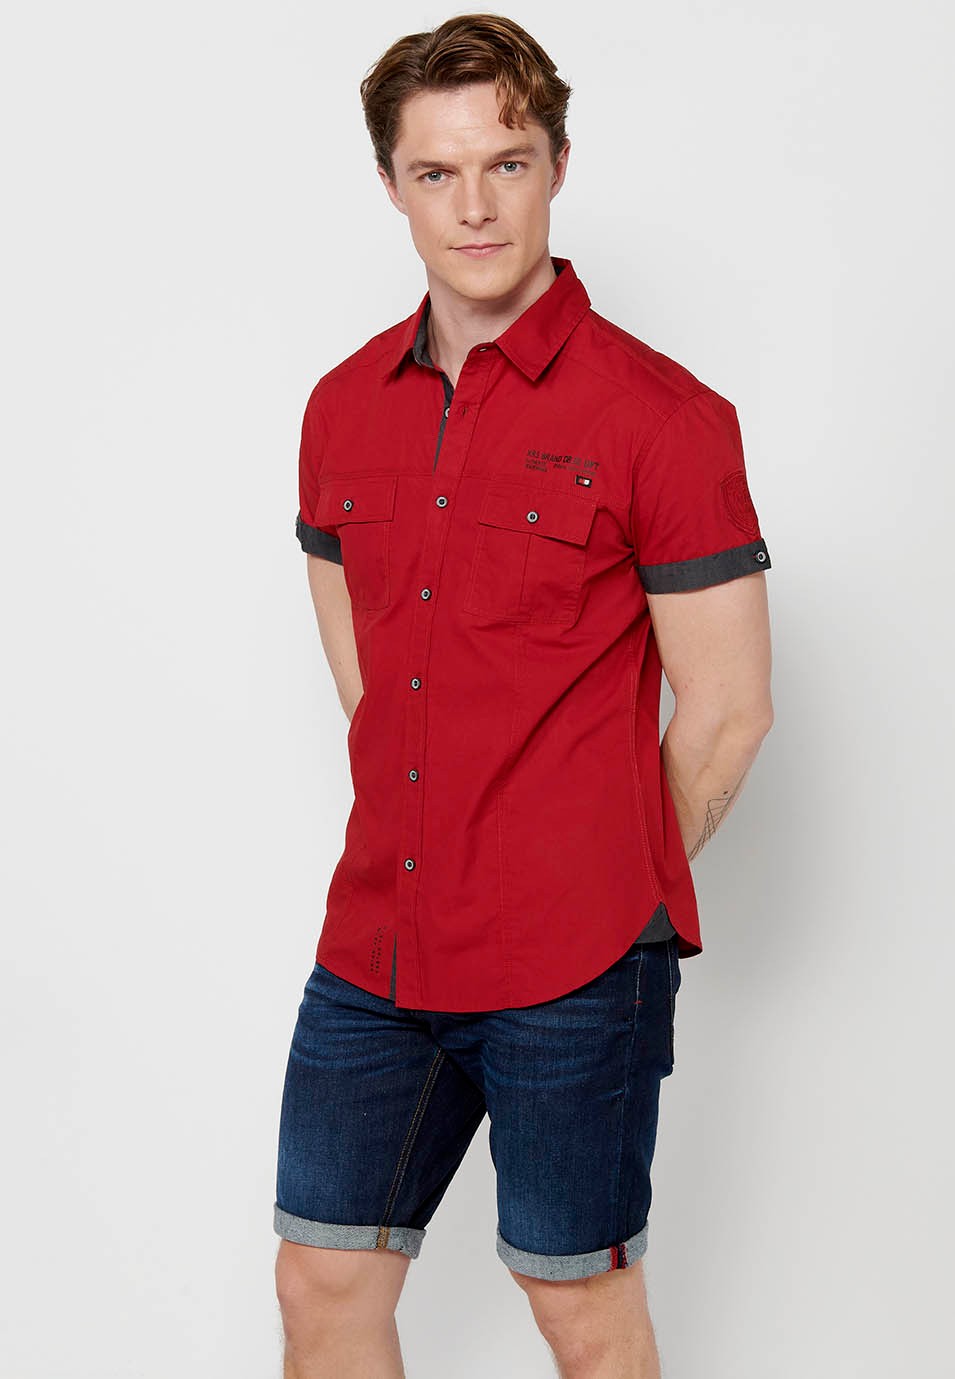 Kurzärmliges Baumwollhemd mit Knopfverschluss vorne und Pattentaschen vorne in der Farbe rot für Herren